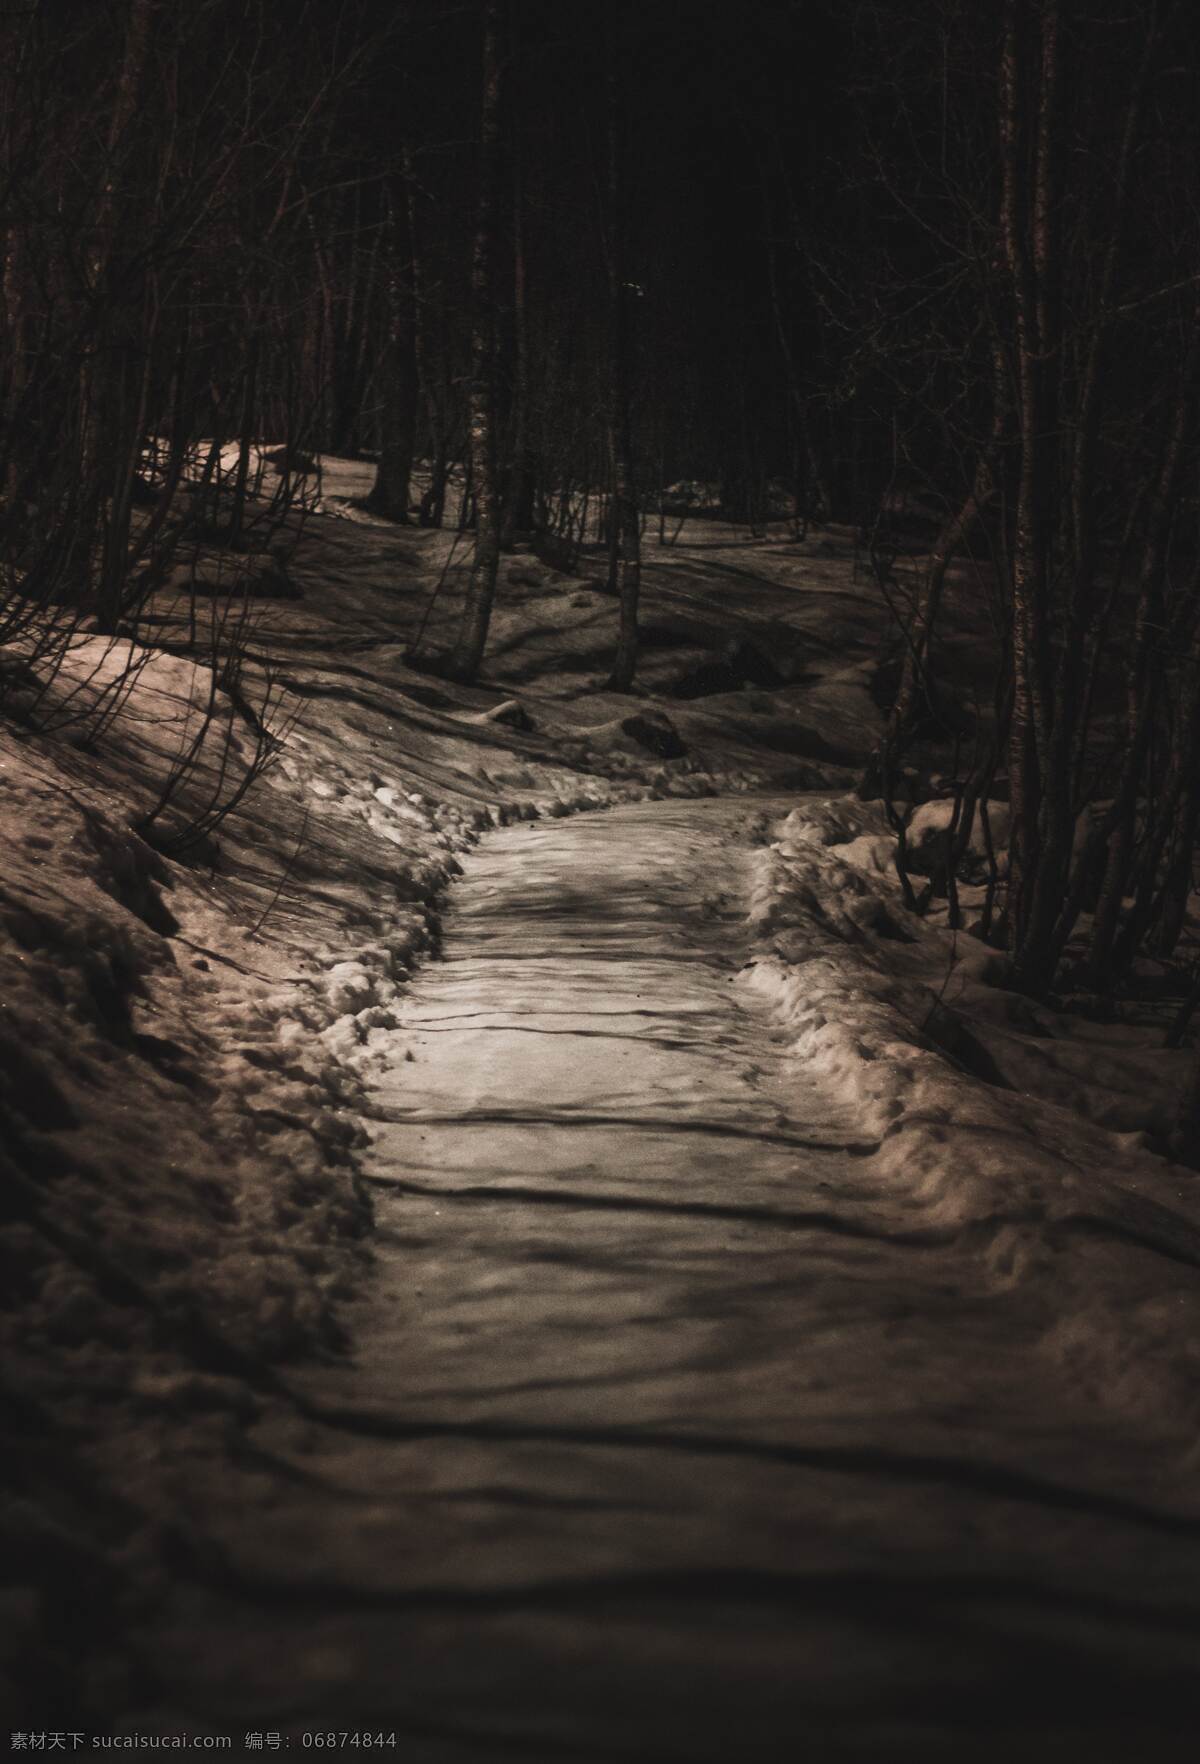 雪原小路 旅游 欧美 冬季 夜晚 雪原 小路 拍摄 摄影类 自然景观 自然风景